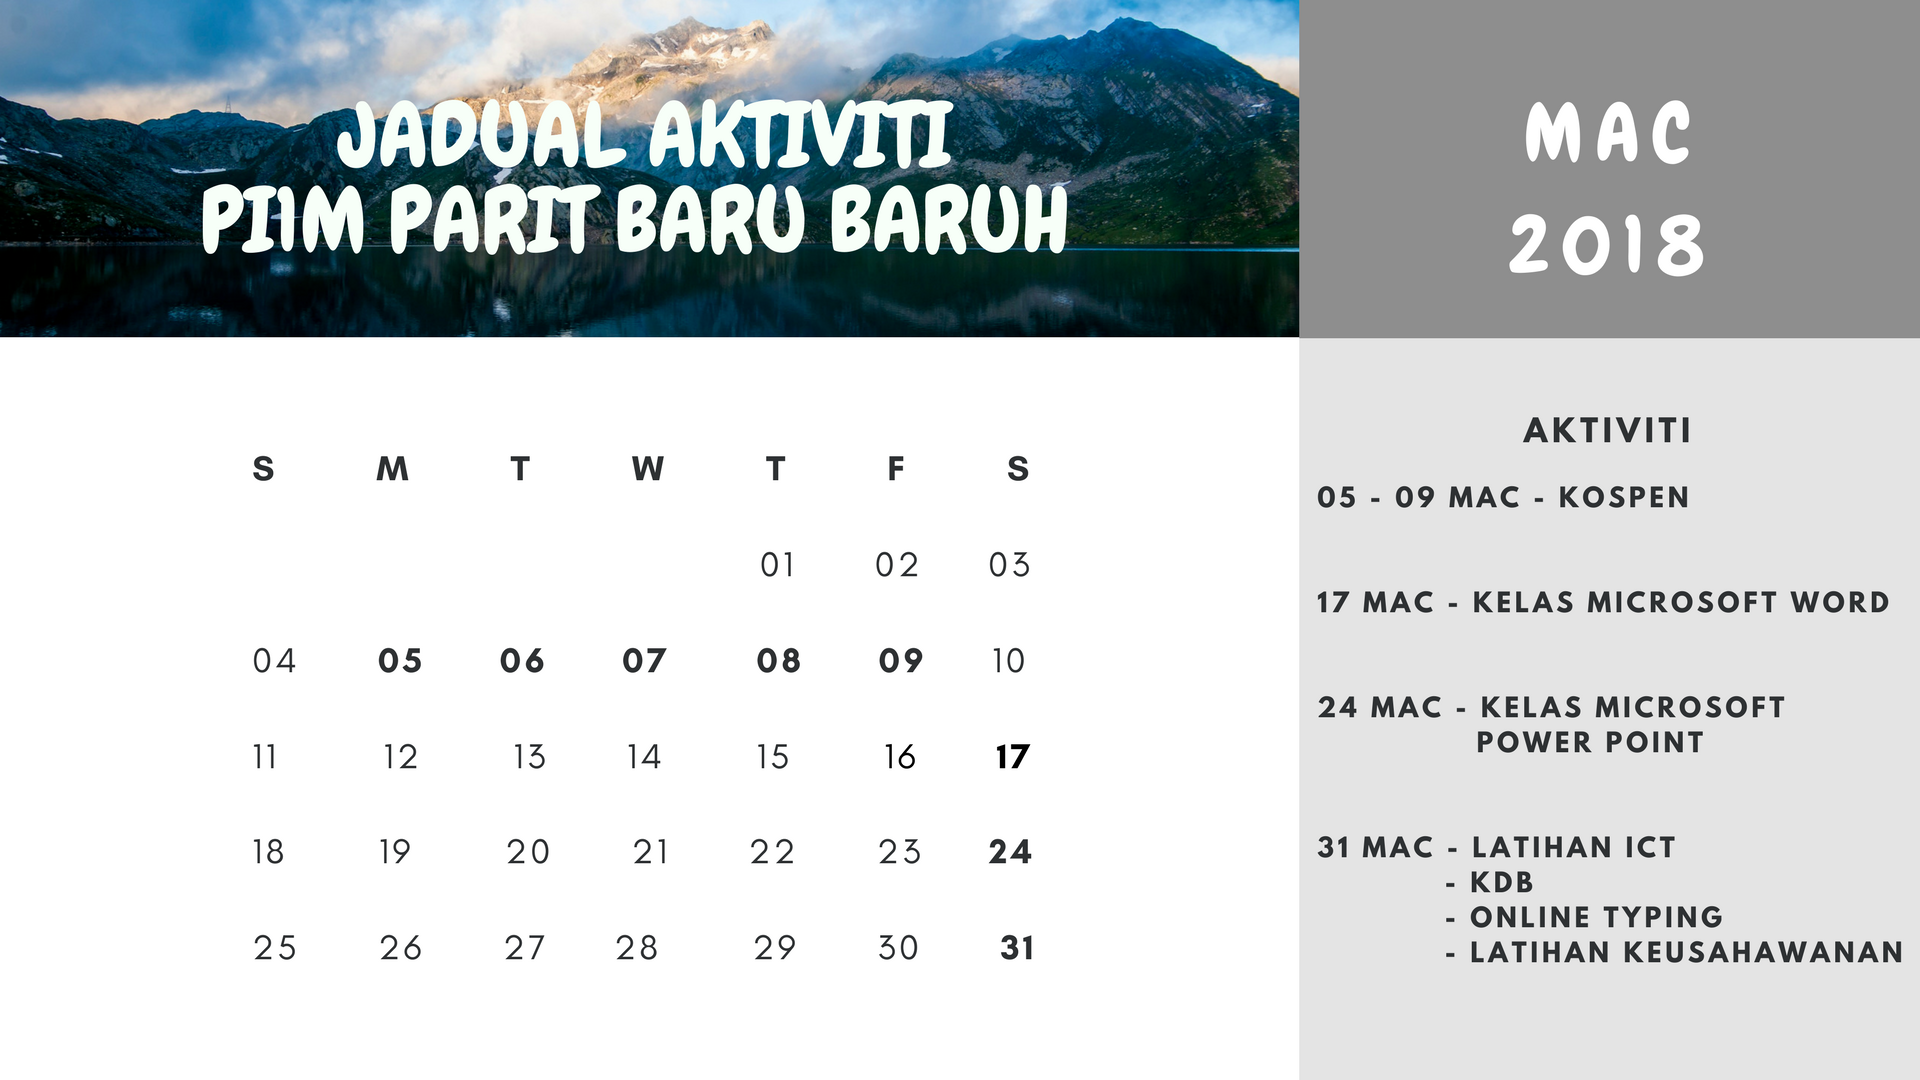 jadual aktiviti mac 2018